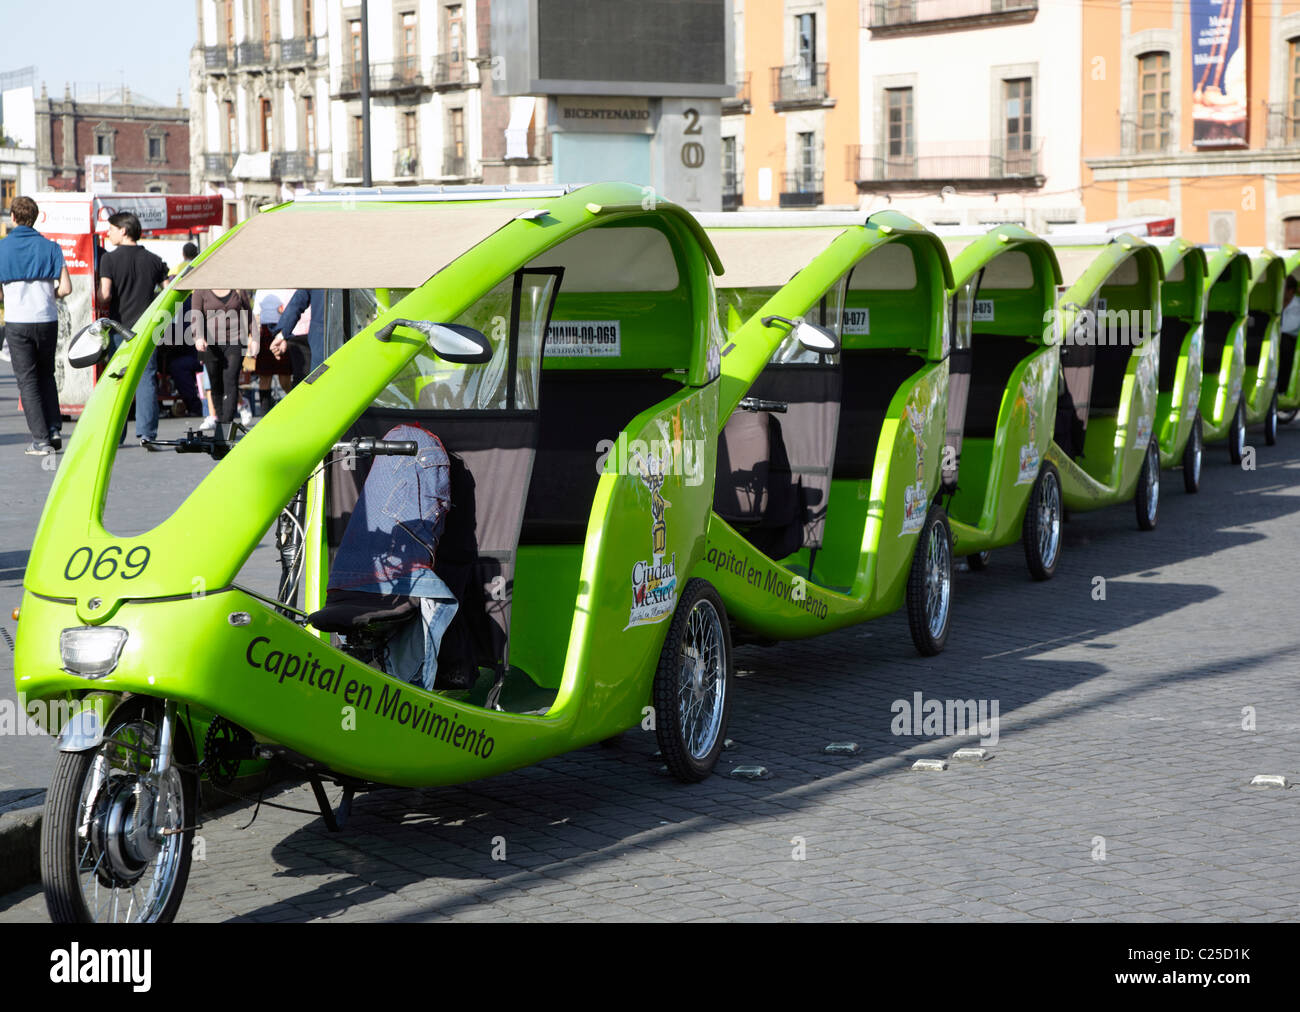 Peddle Rickshaws Zocalo Mexico City Stock Photo